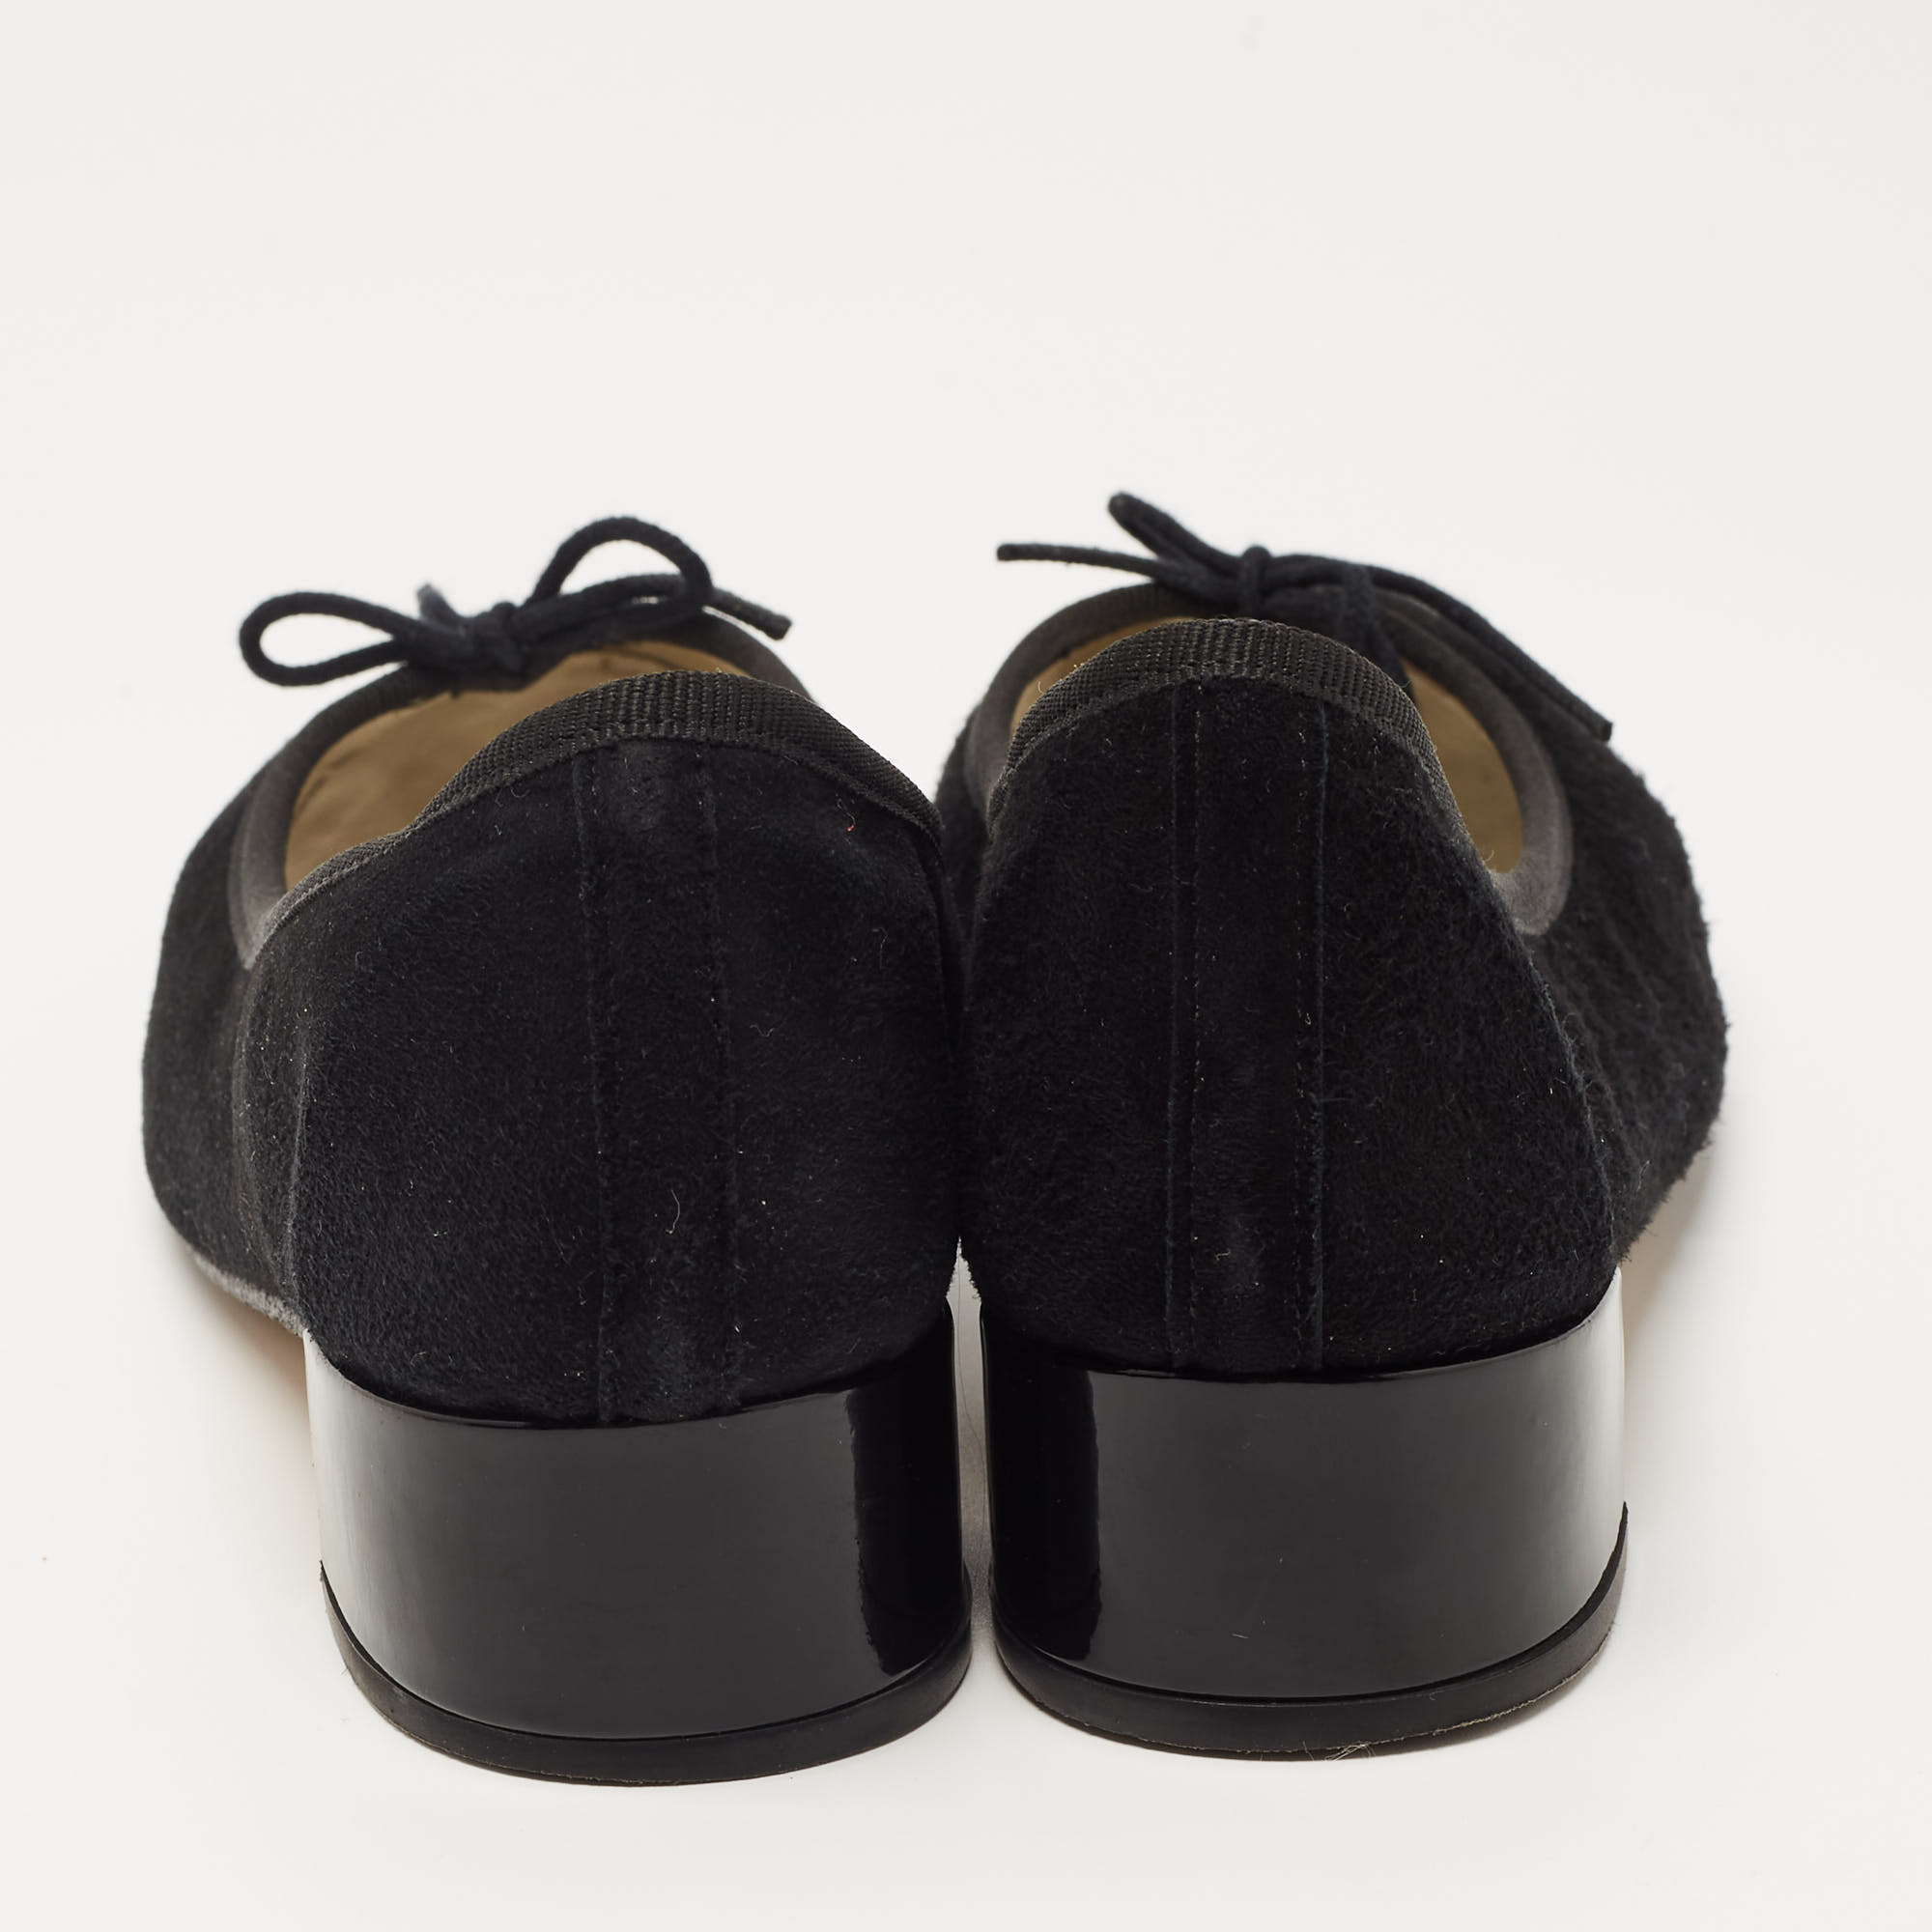 Repetto Black Suede Lili Flats Size 36.5